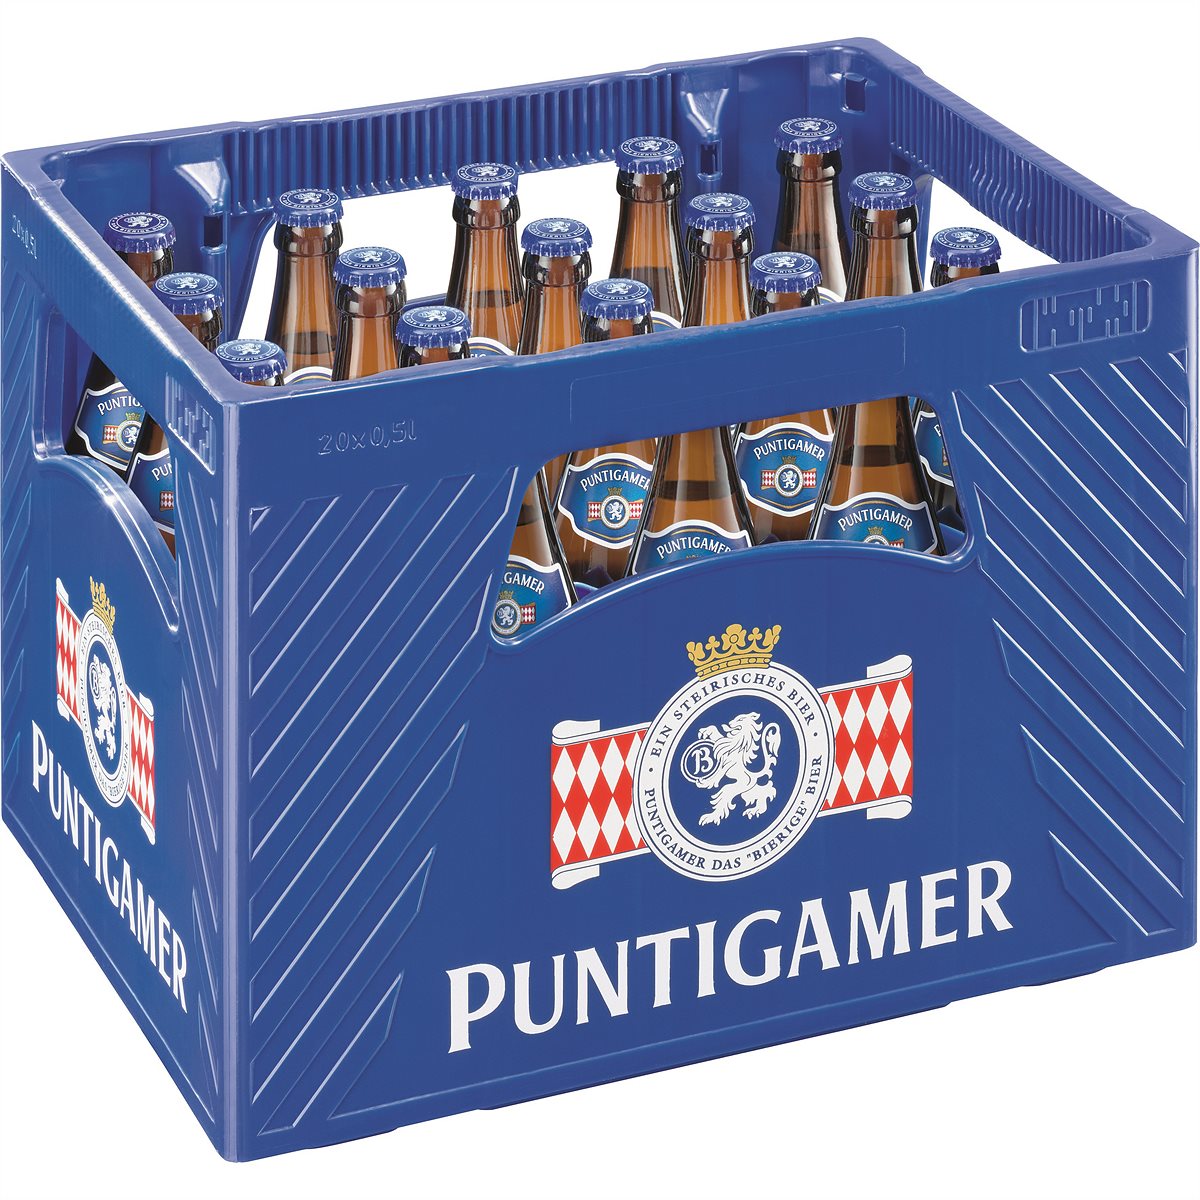 Puntigamer, das bierige Bier, unterstützt Mehrwegkampagne